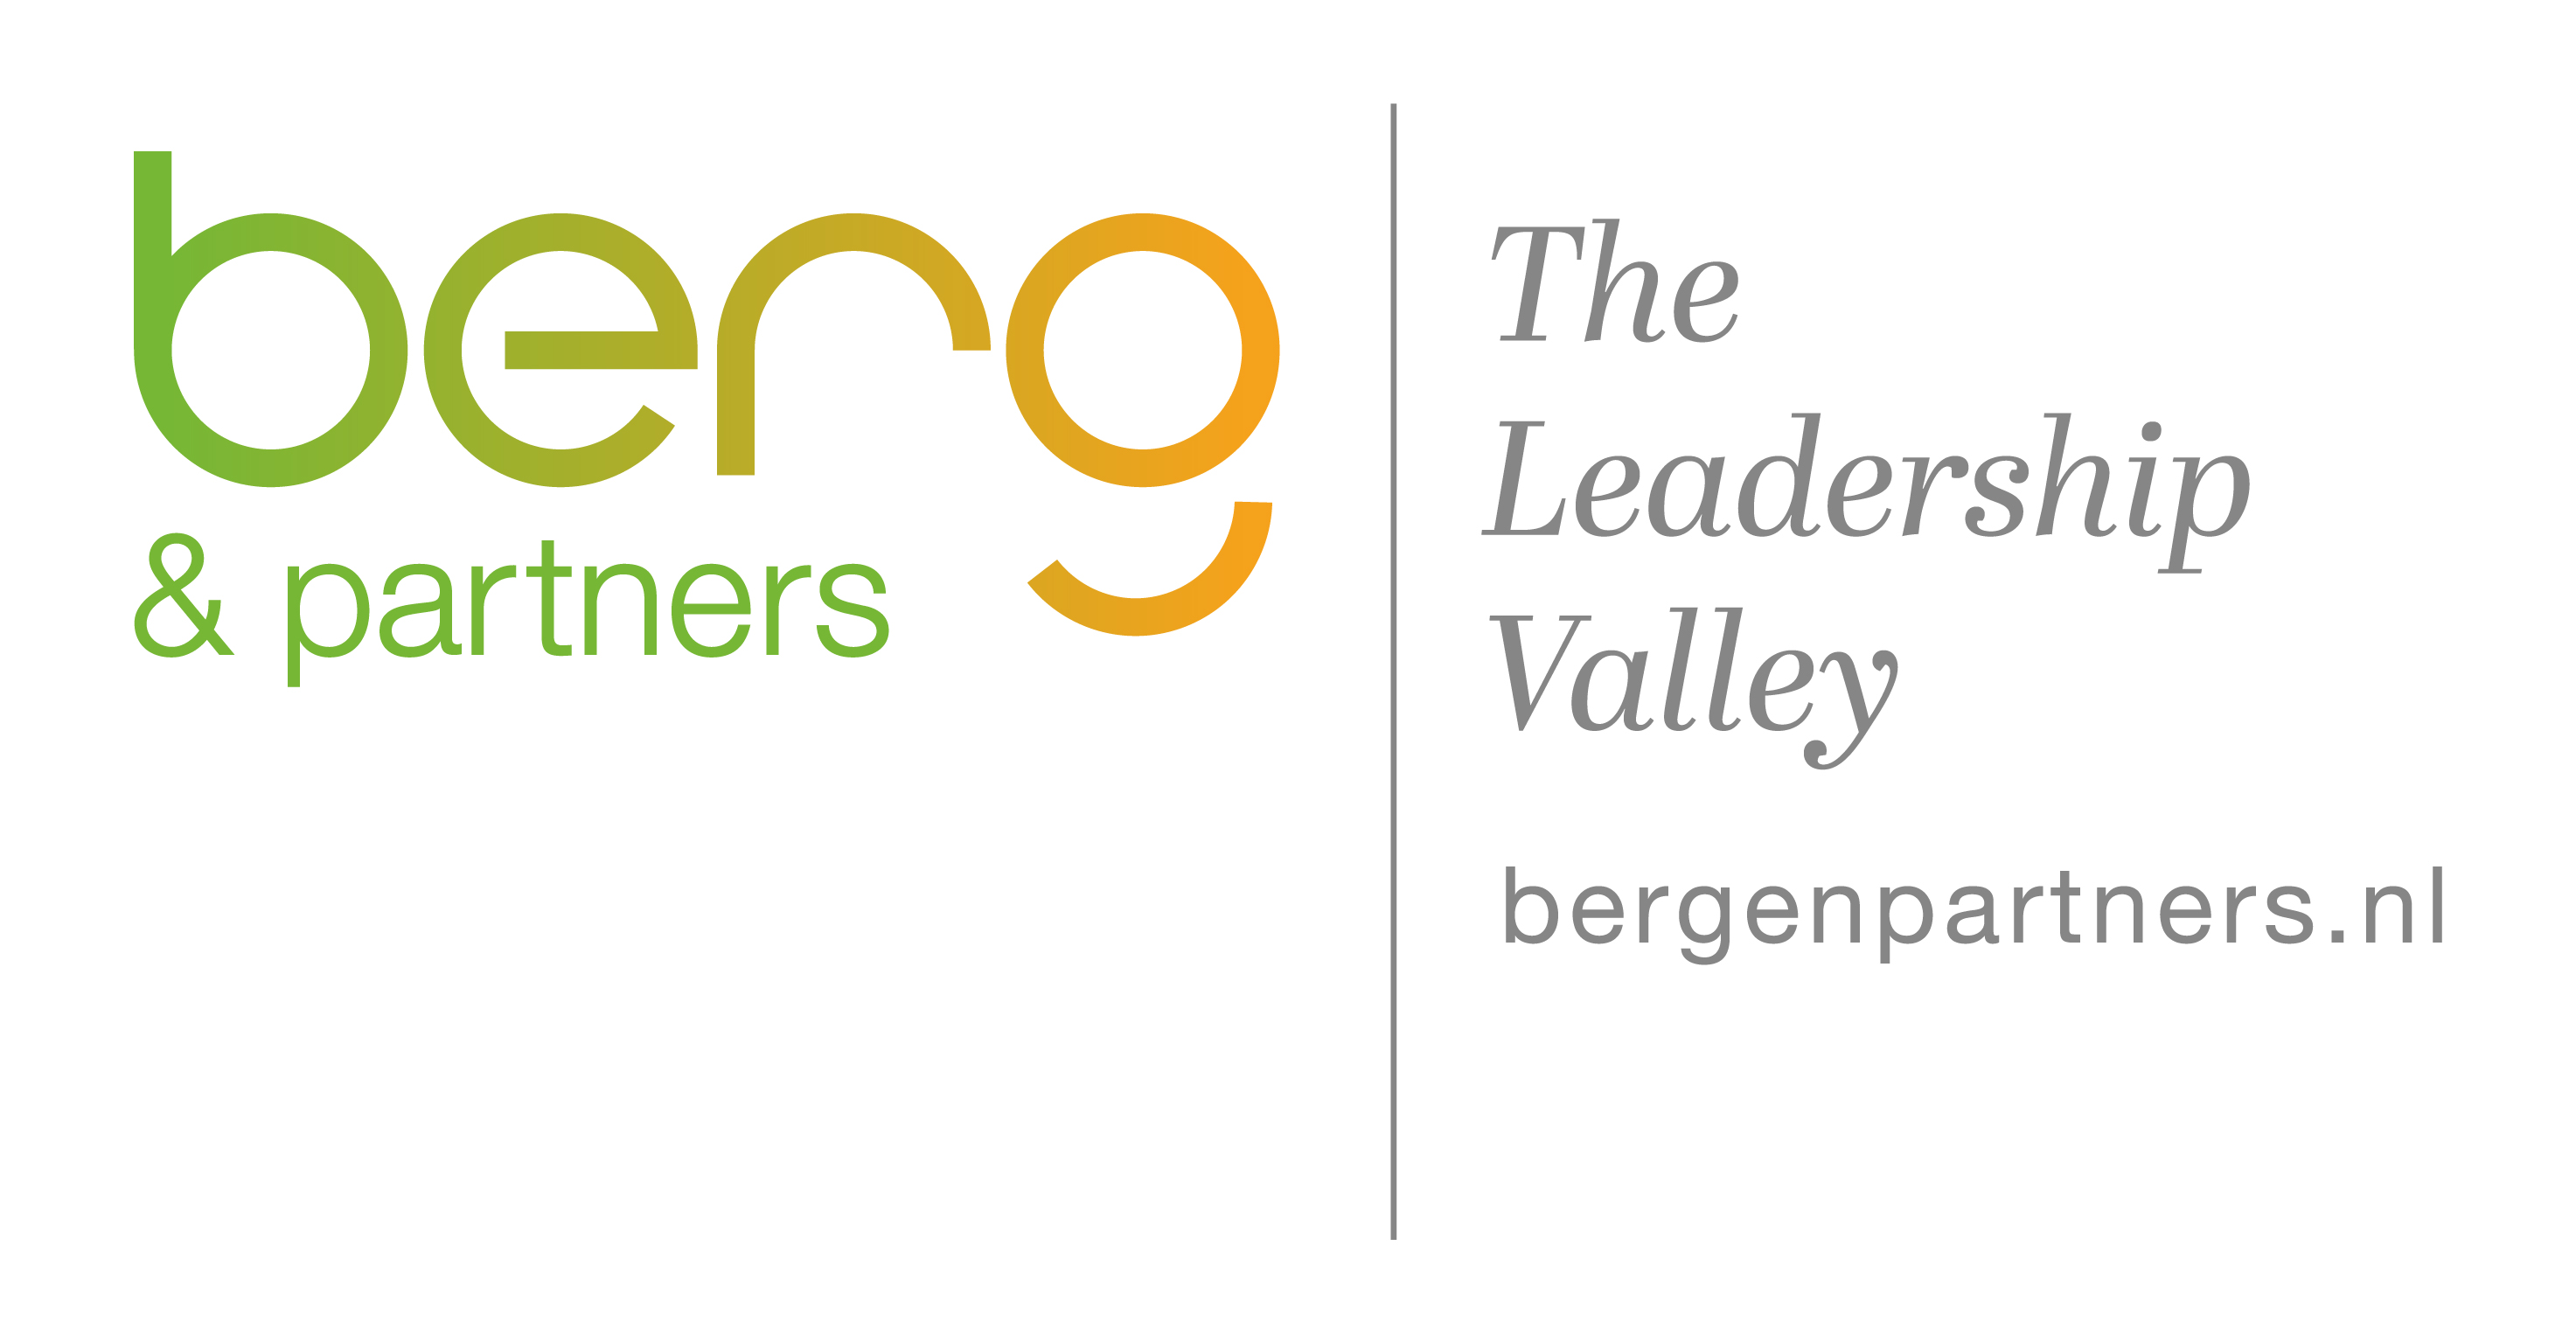 Berg & Partners